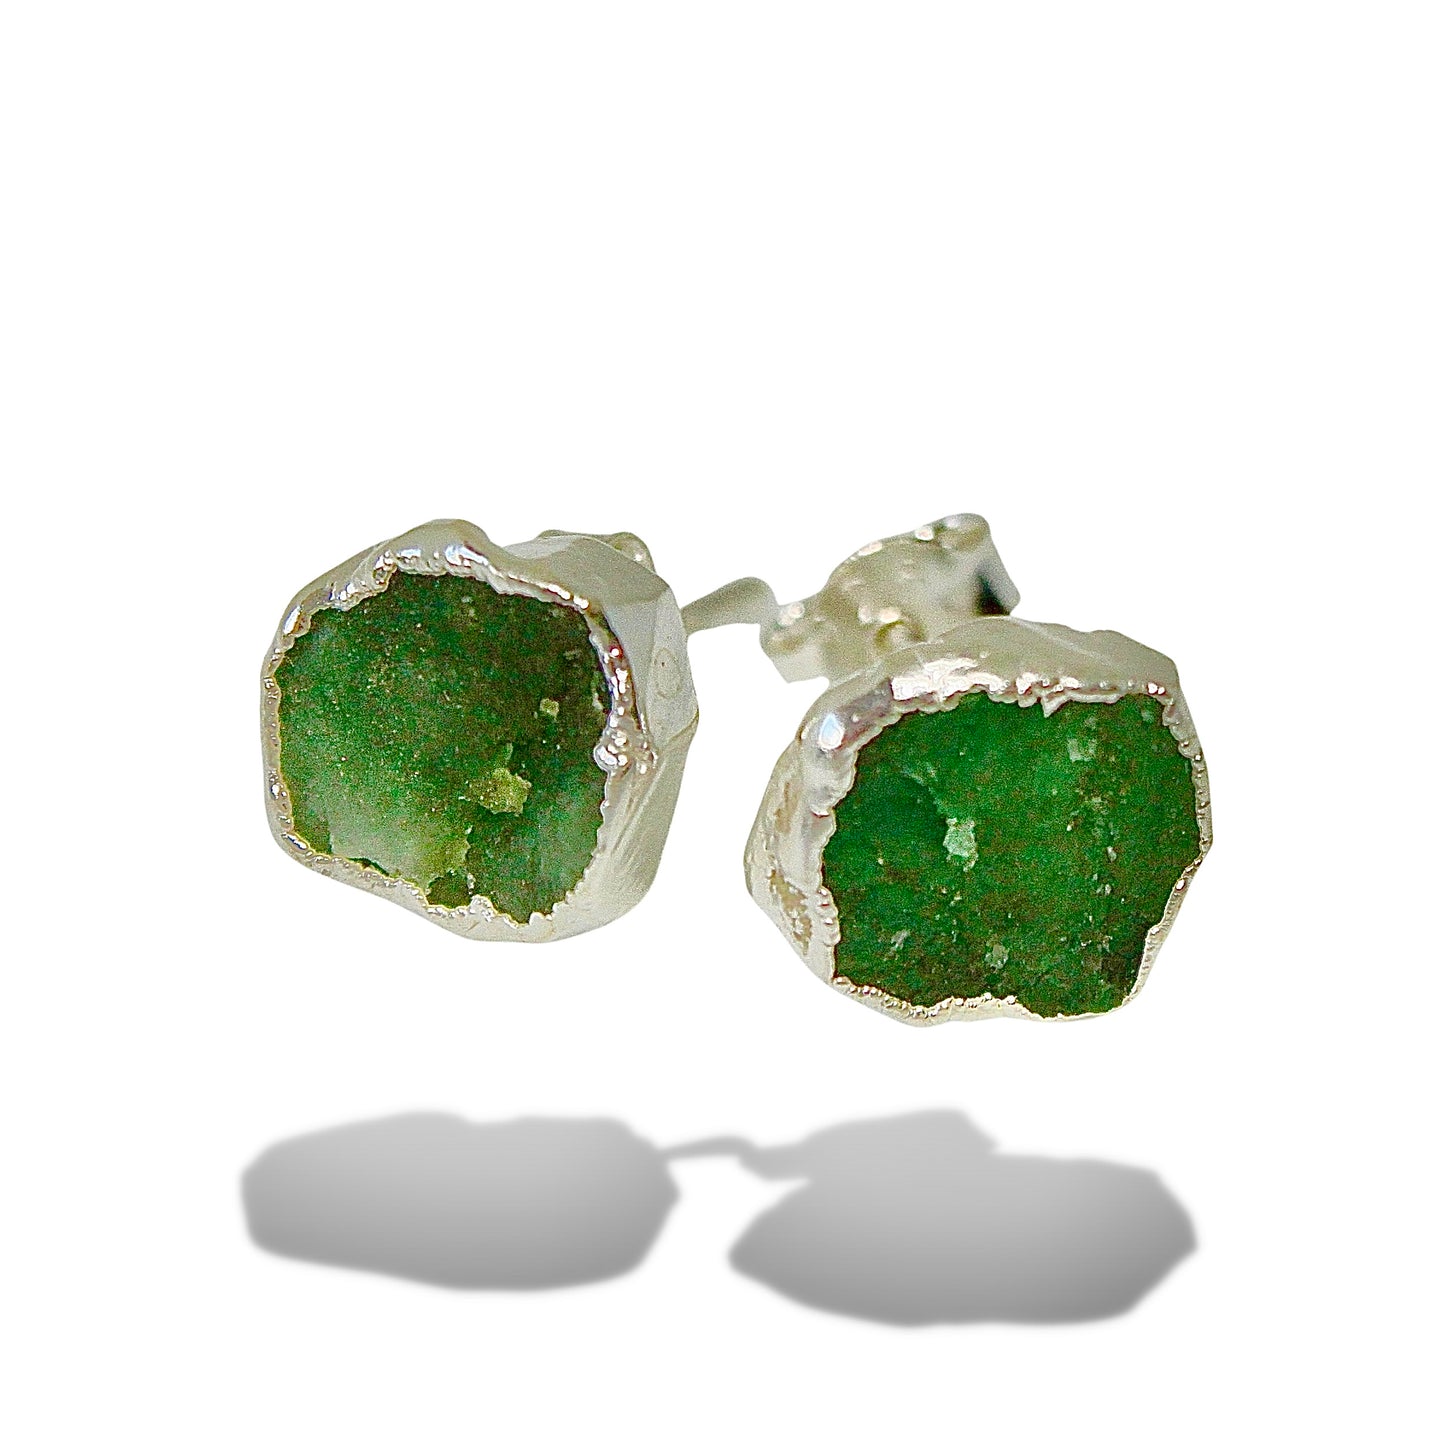 Raw Emerald Handmade Earrings in Sterling Silver